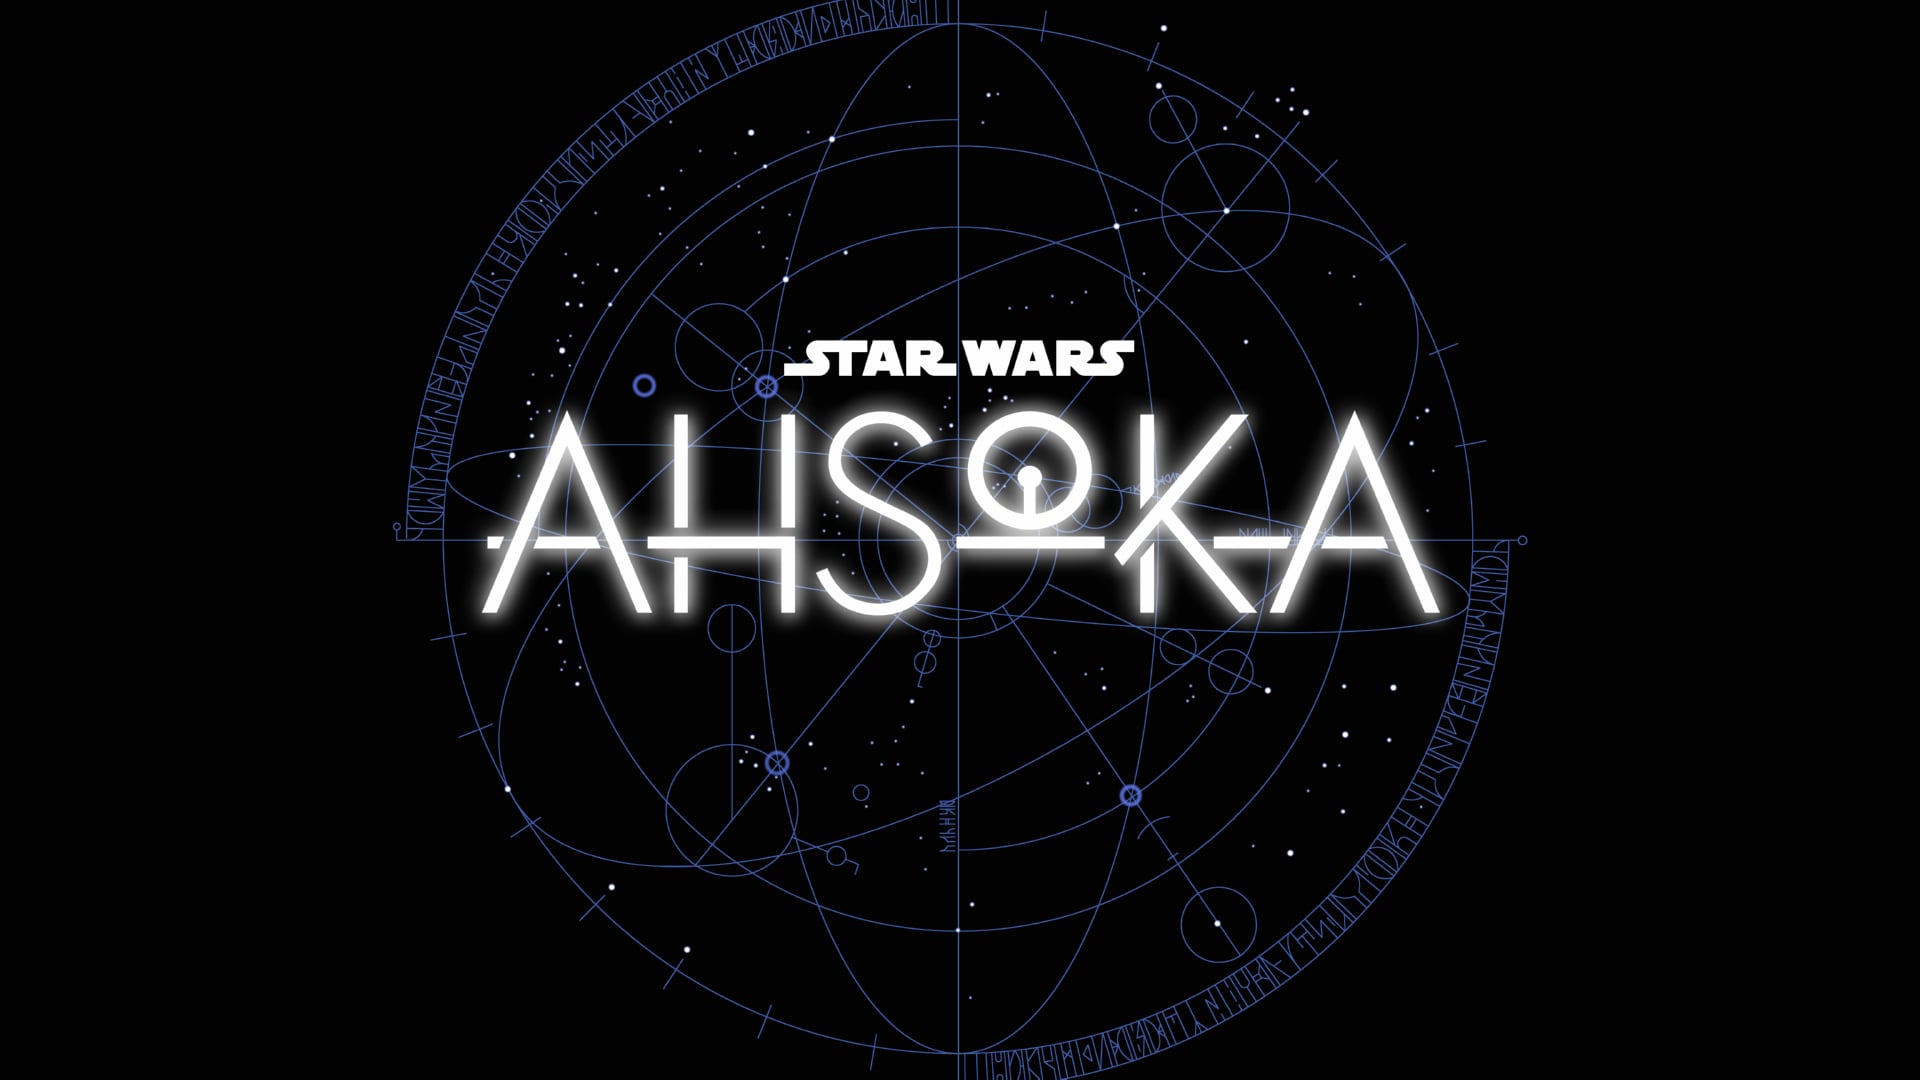 Digital Art Star Wars Ahsoka at 1280 x 960 size wallpapers HD quality